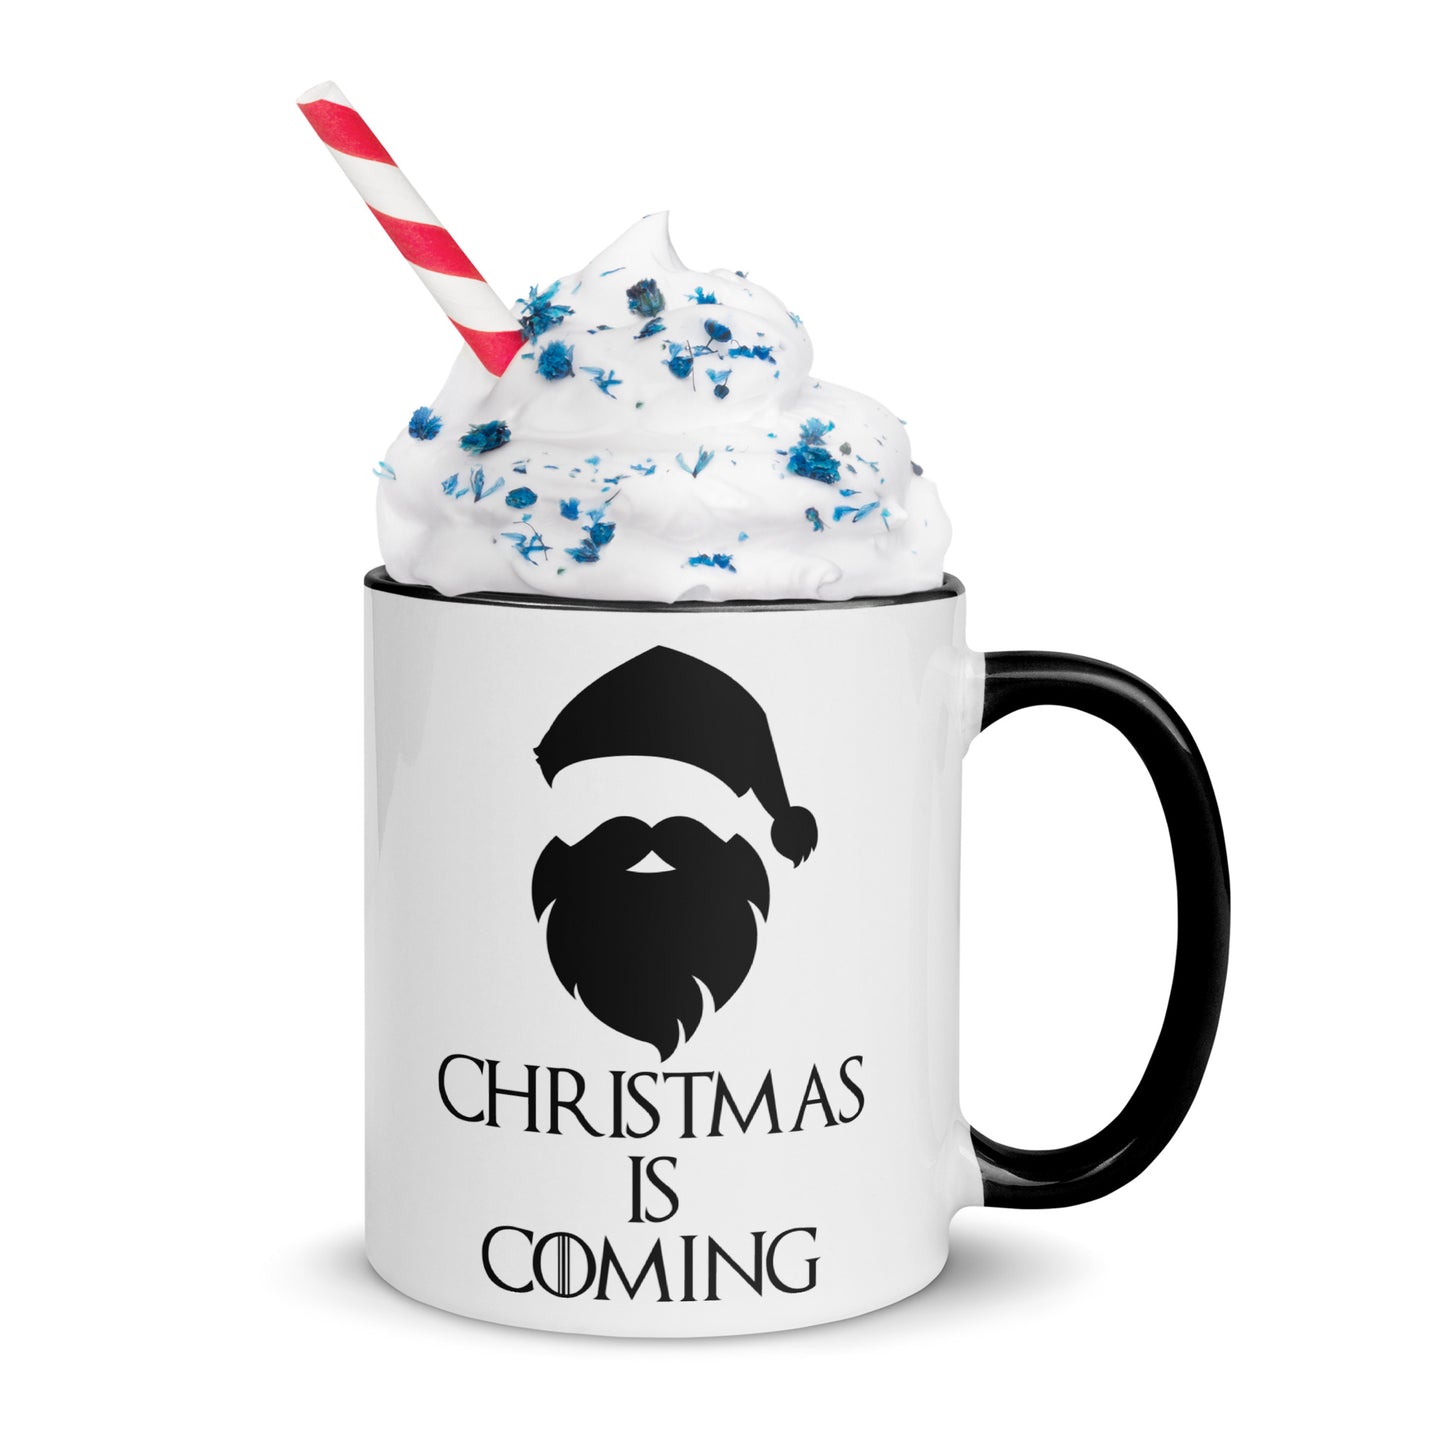 'Christmas is Coming' Mug